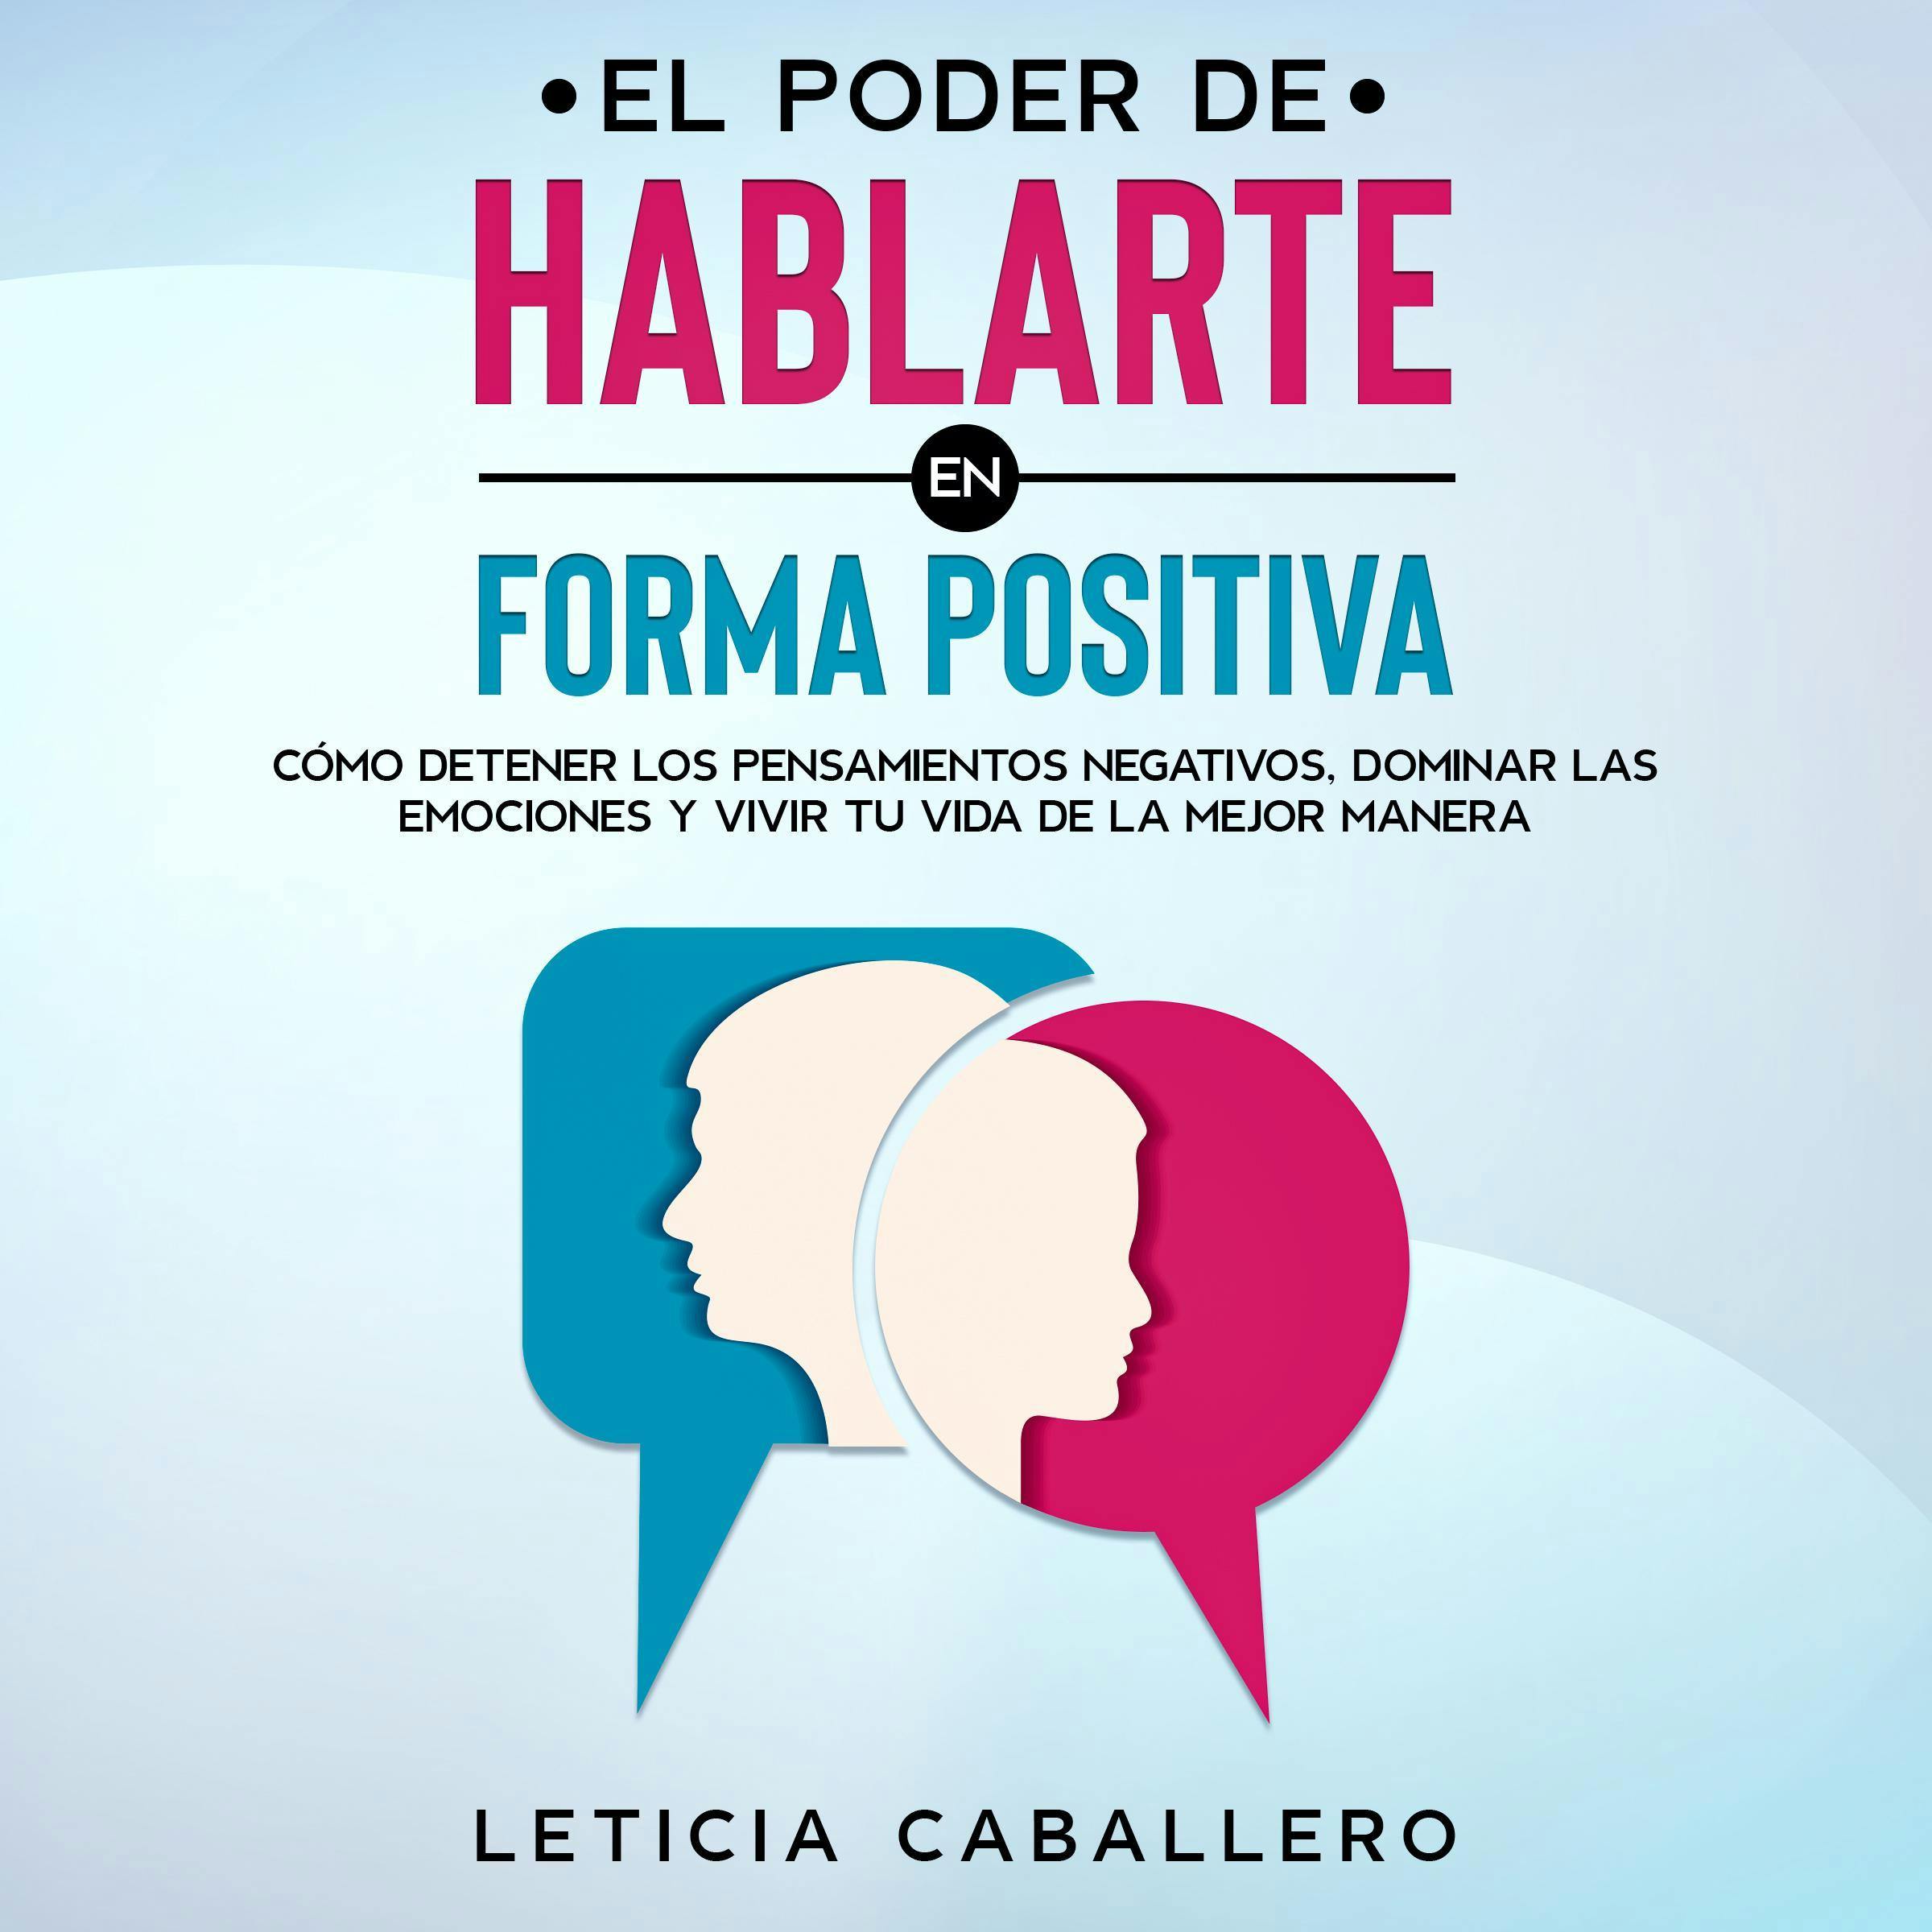 El poder de hablarte en forma positiva - Leticia Caballero